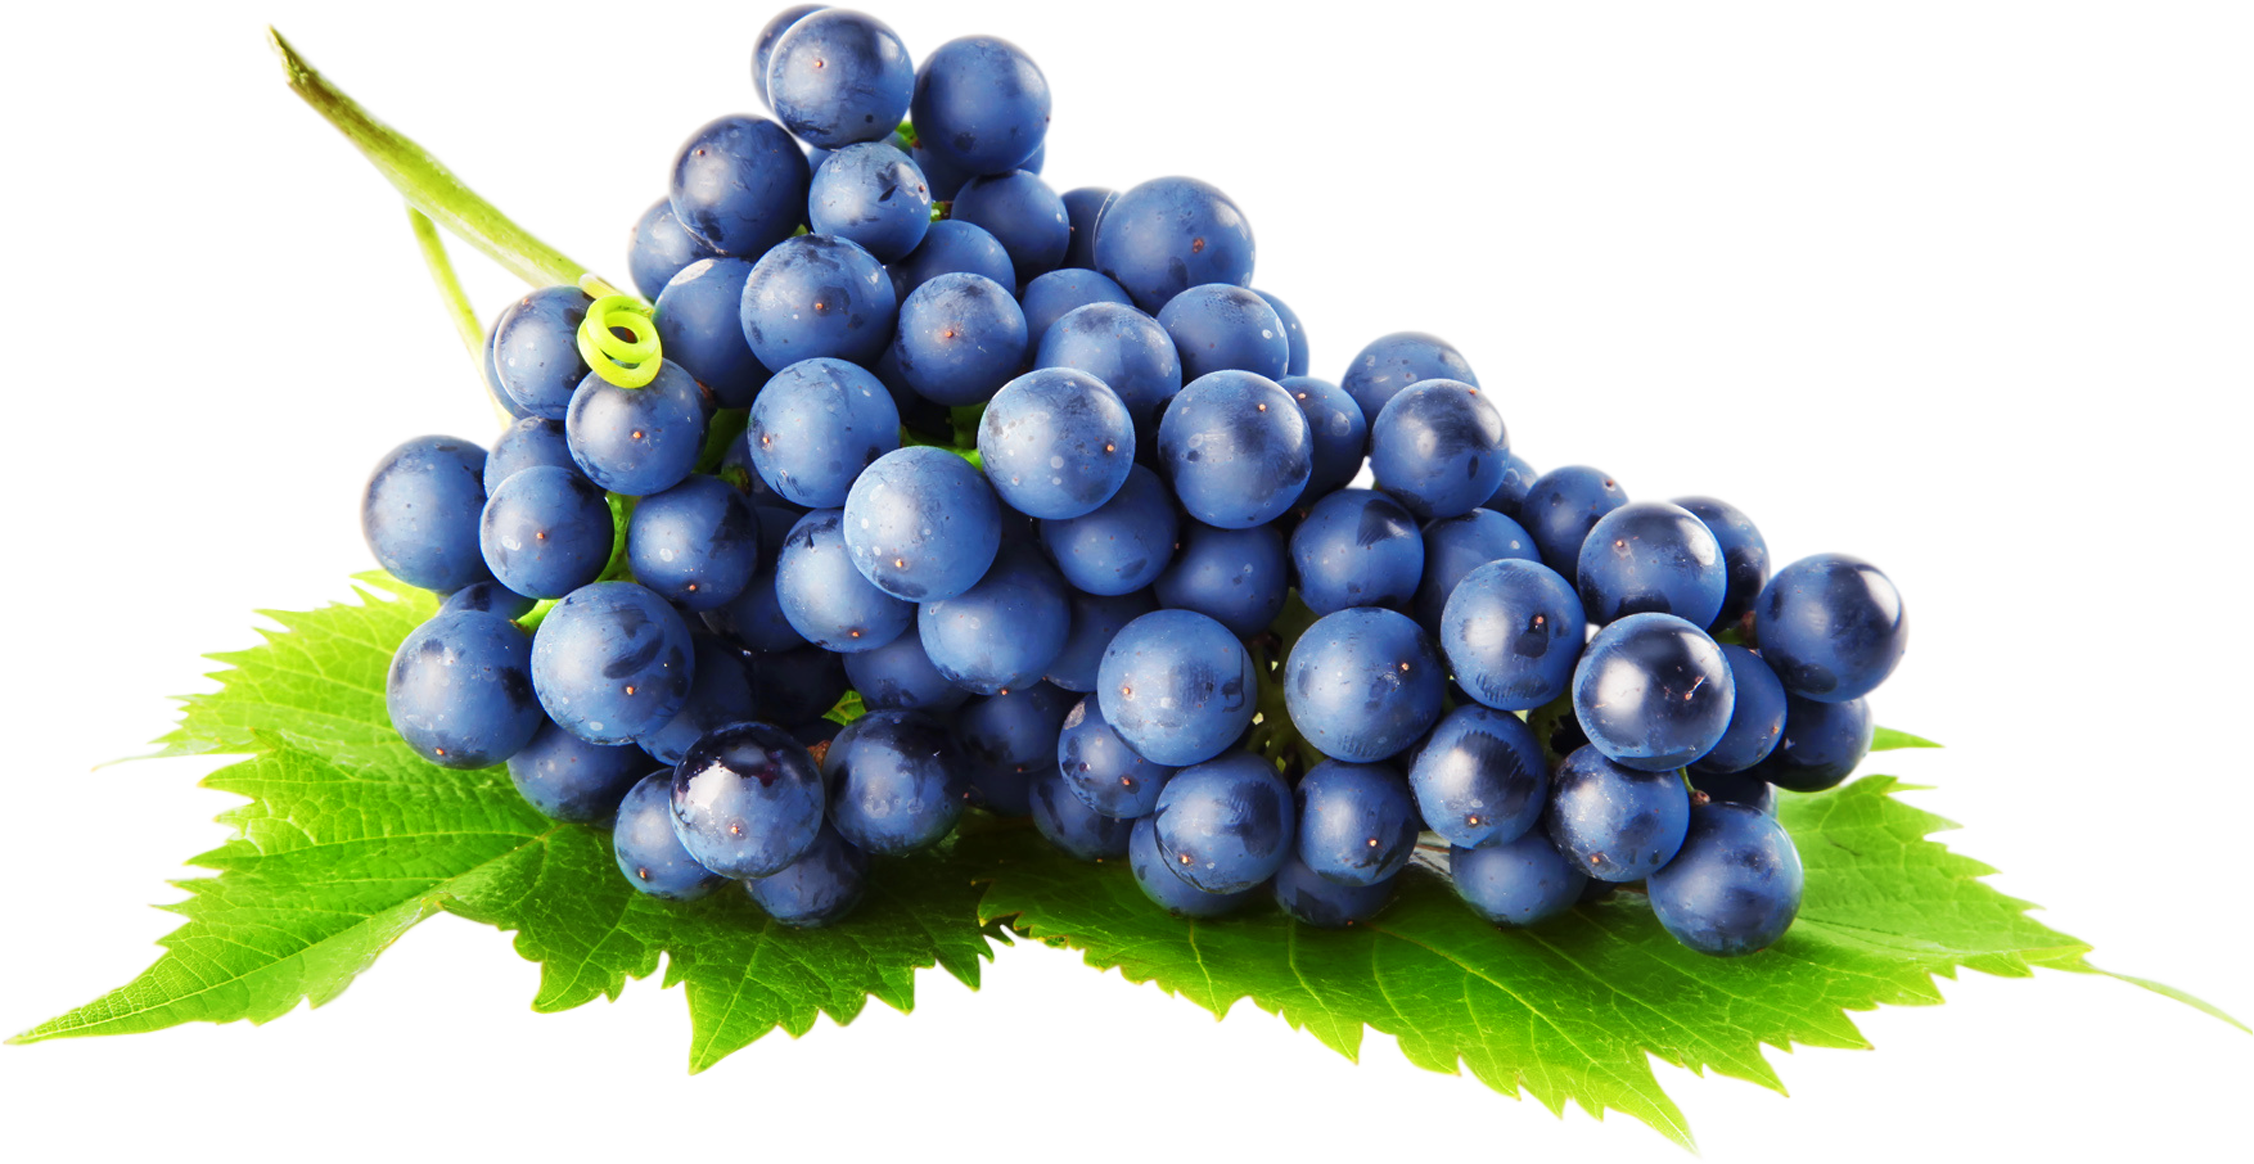 Imagen Transparente de uvas negras